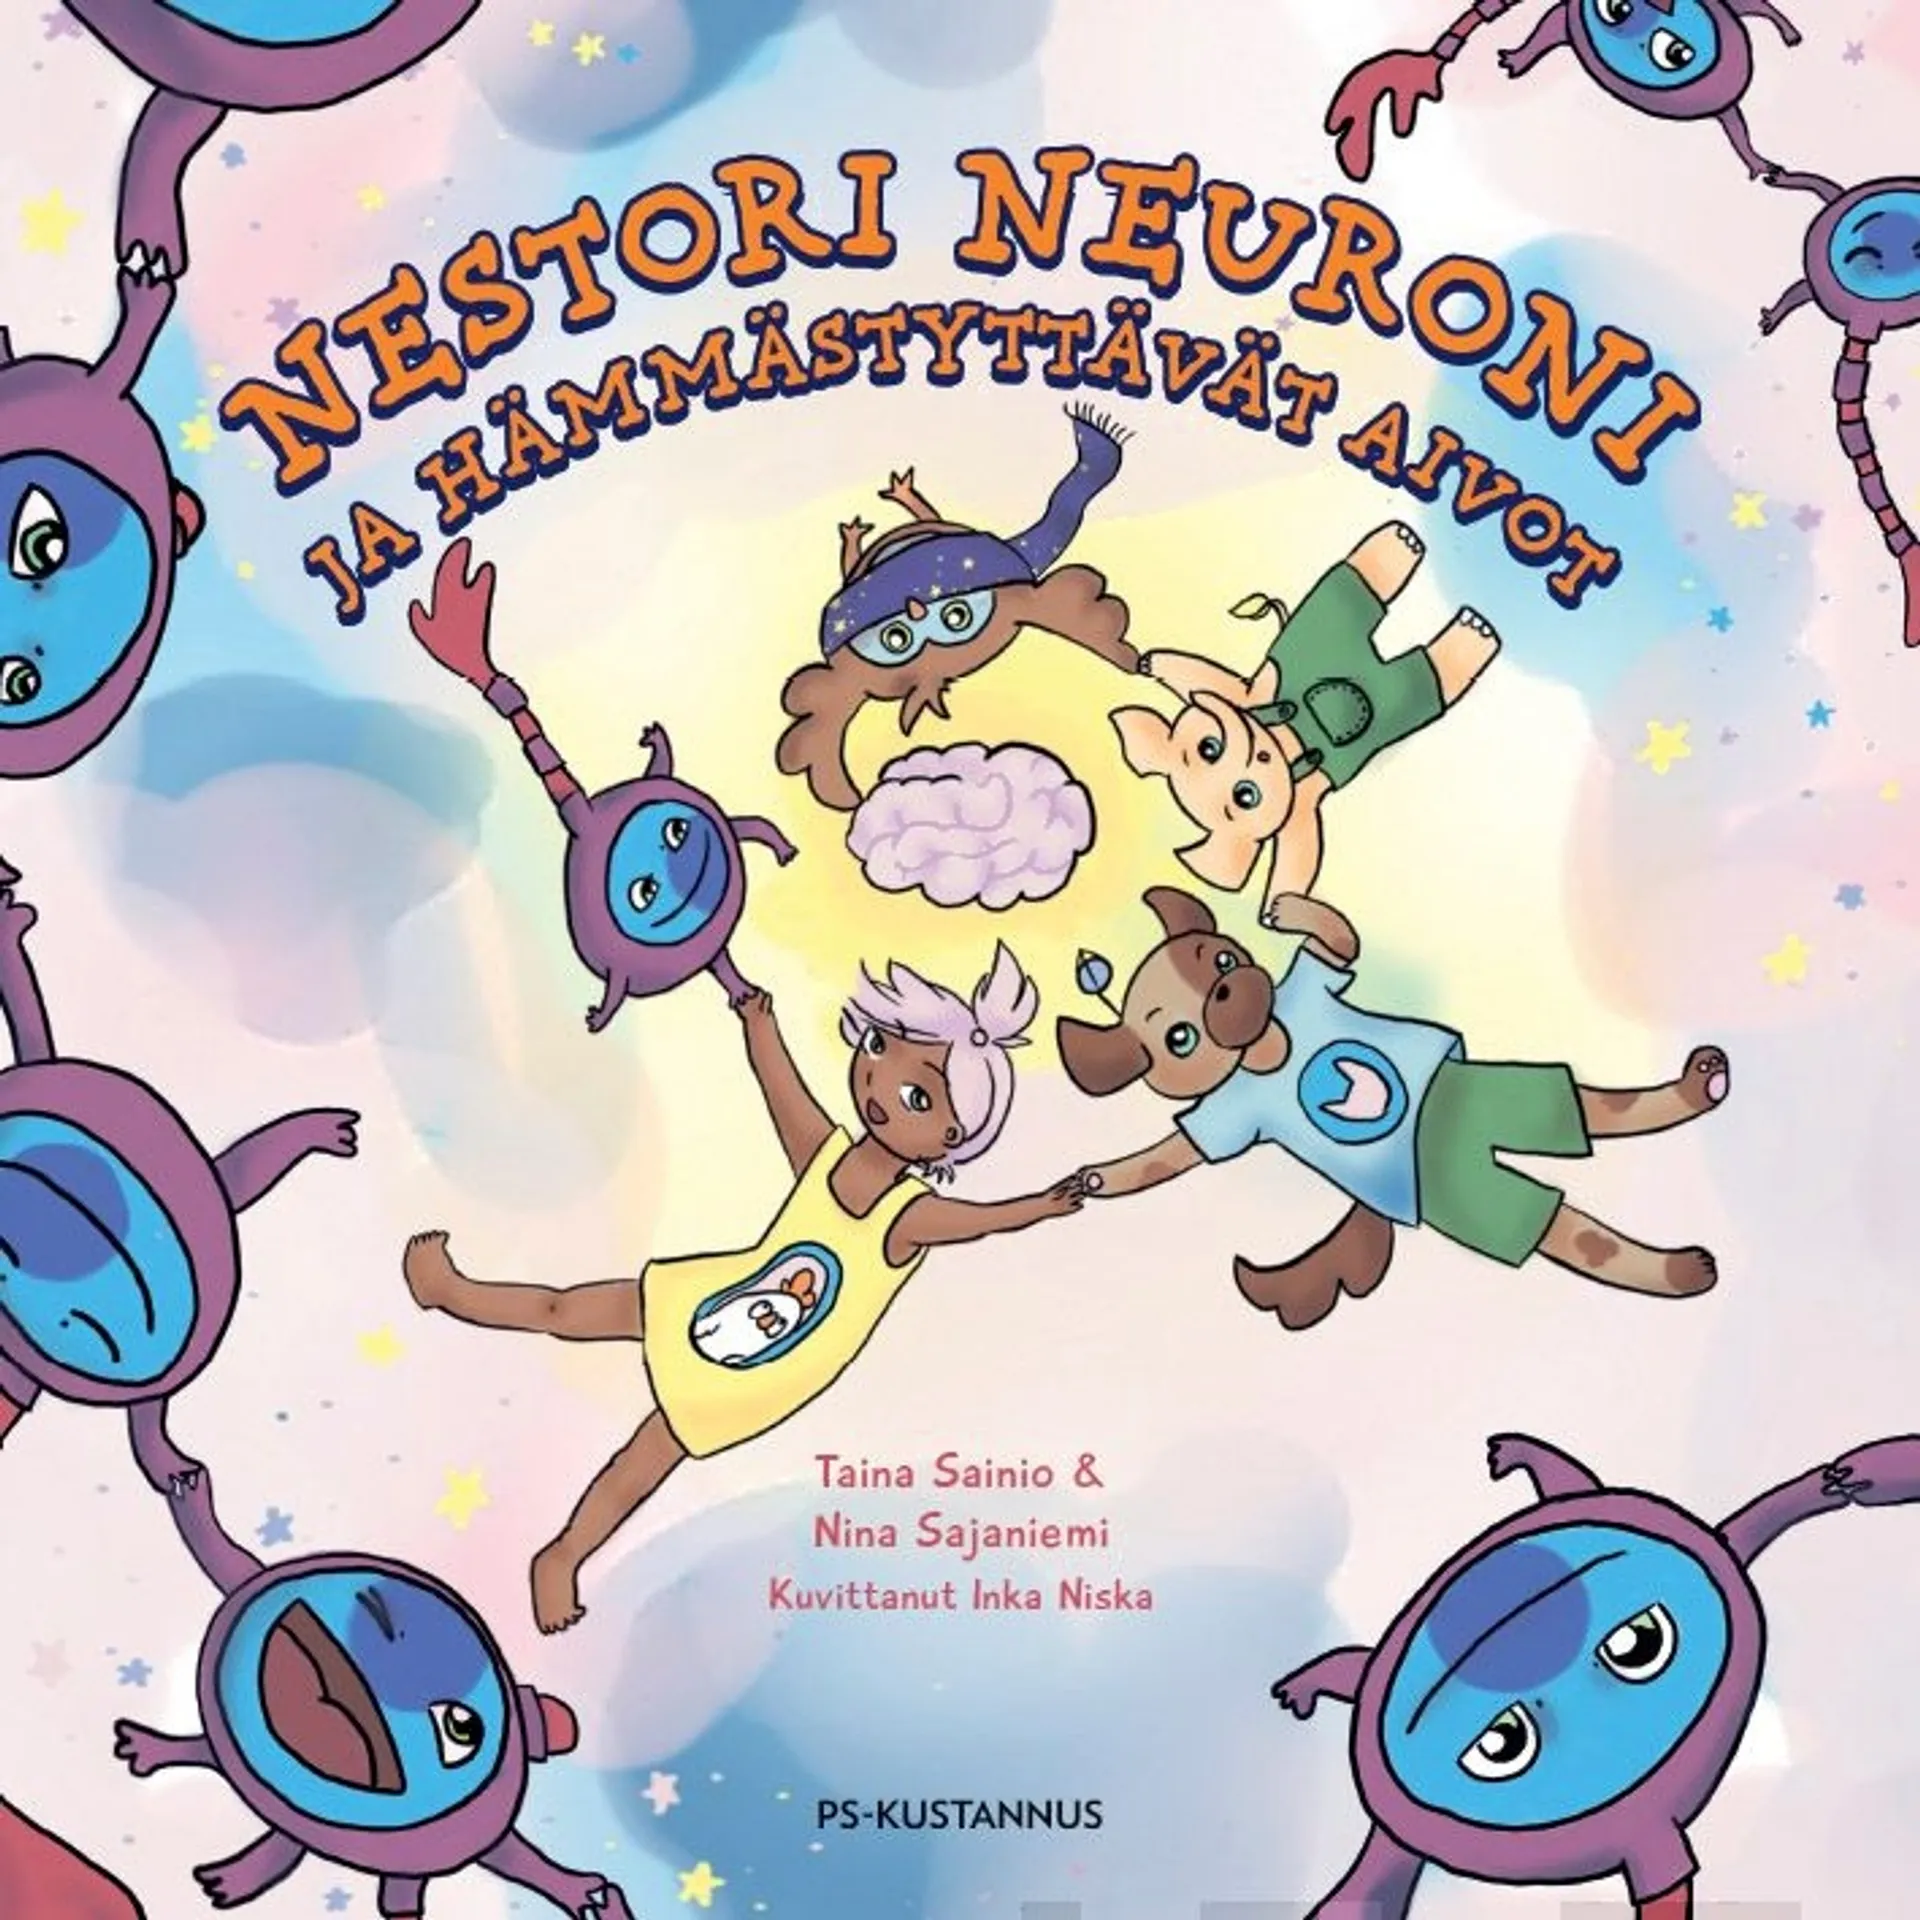 Sainio, Nestori Neuroni ja hämmästyttävät aivot